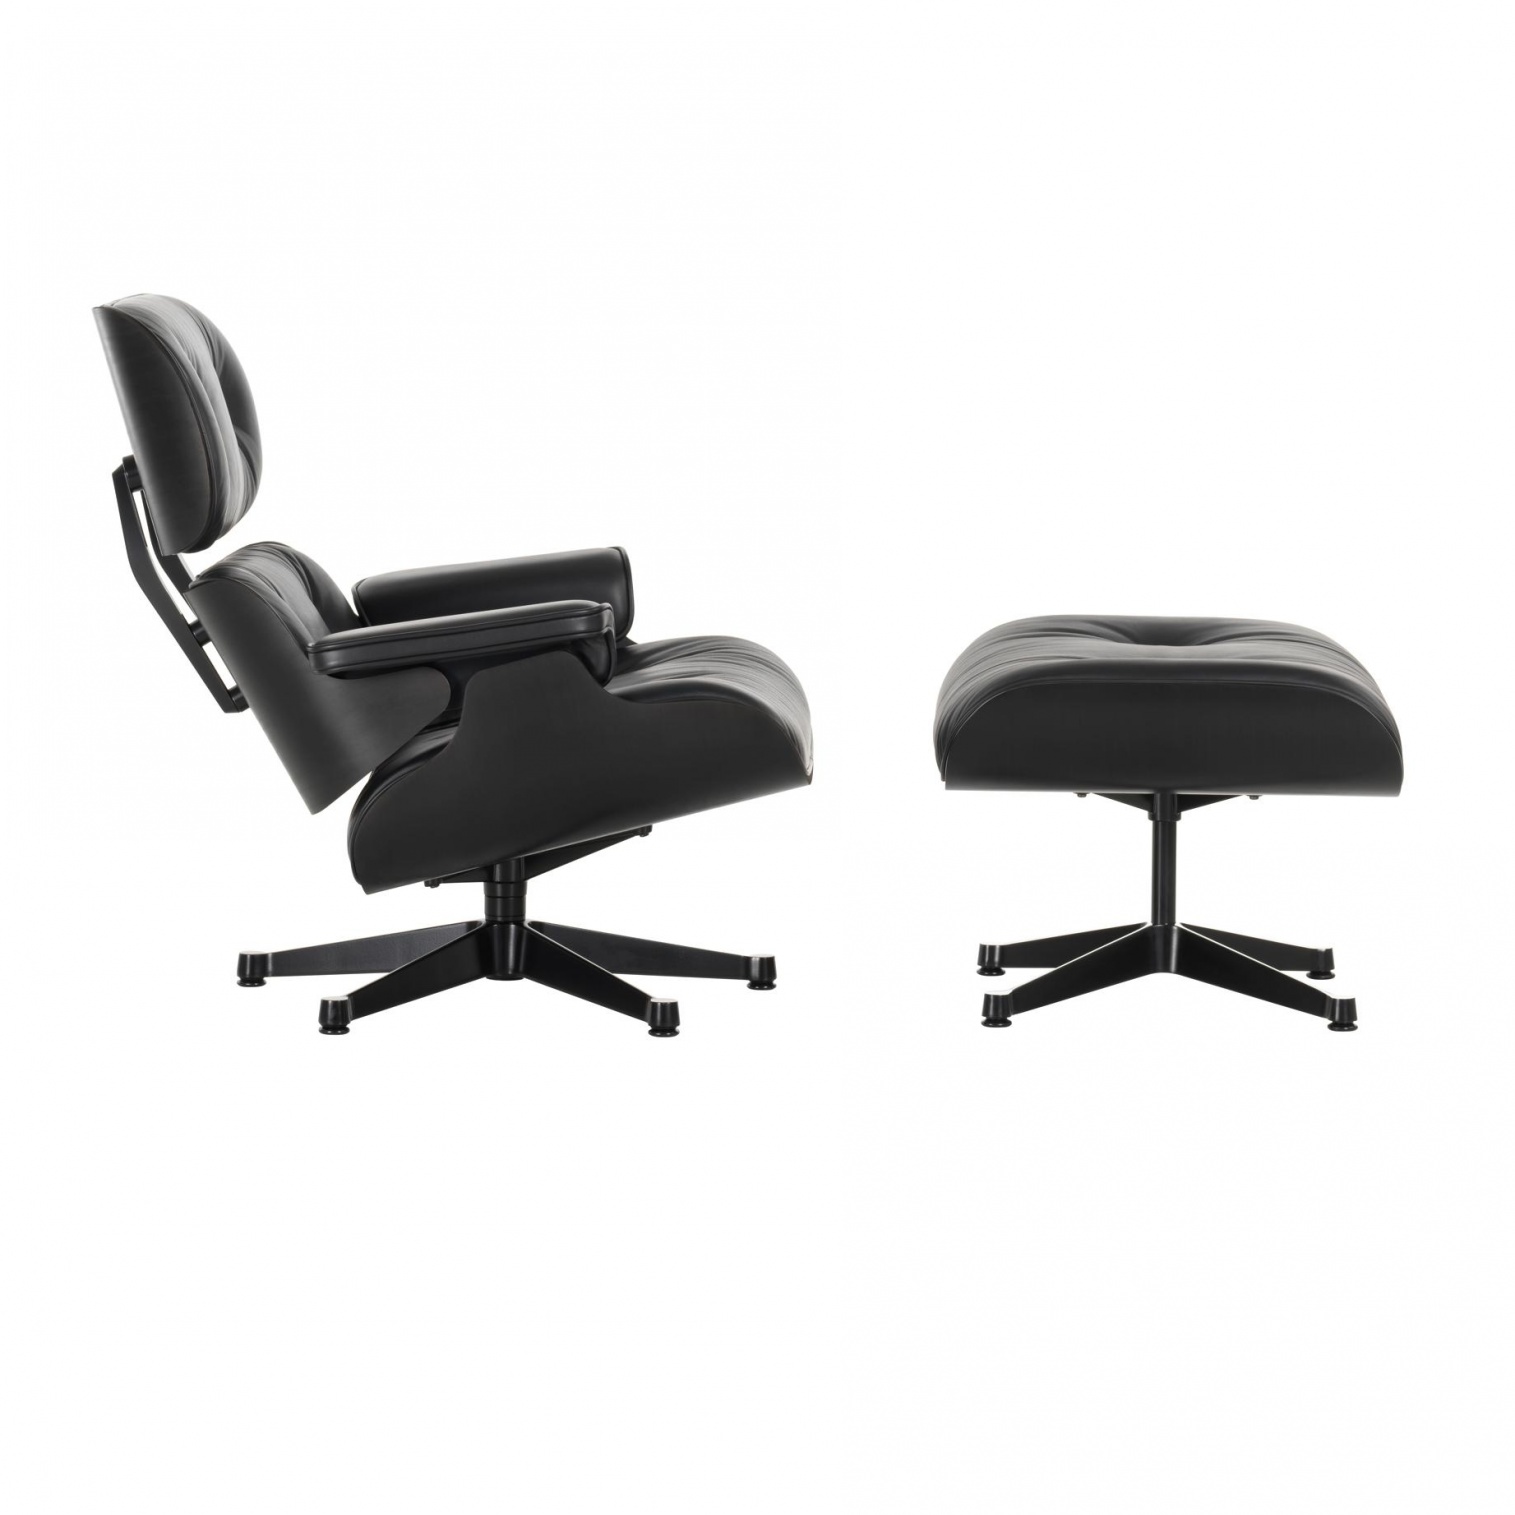 Vitra - Eames Lounge Chair Sessel & Ottoman - schwarz nero/Leder Premium F 66 (nachhaltig)/Schale Esche schwarz lackiert/Gestell Aluminium schwarz lac von Vitra